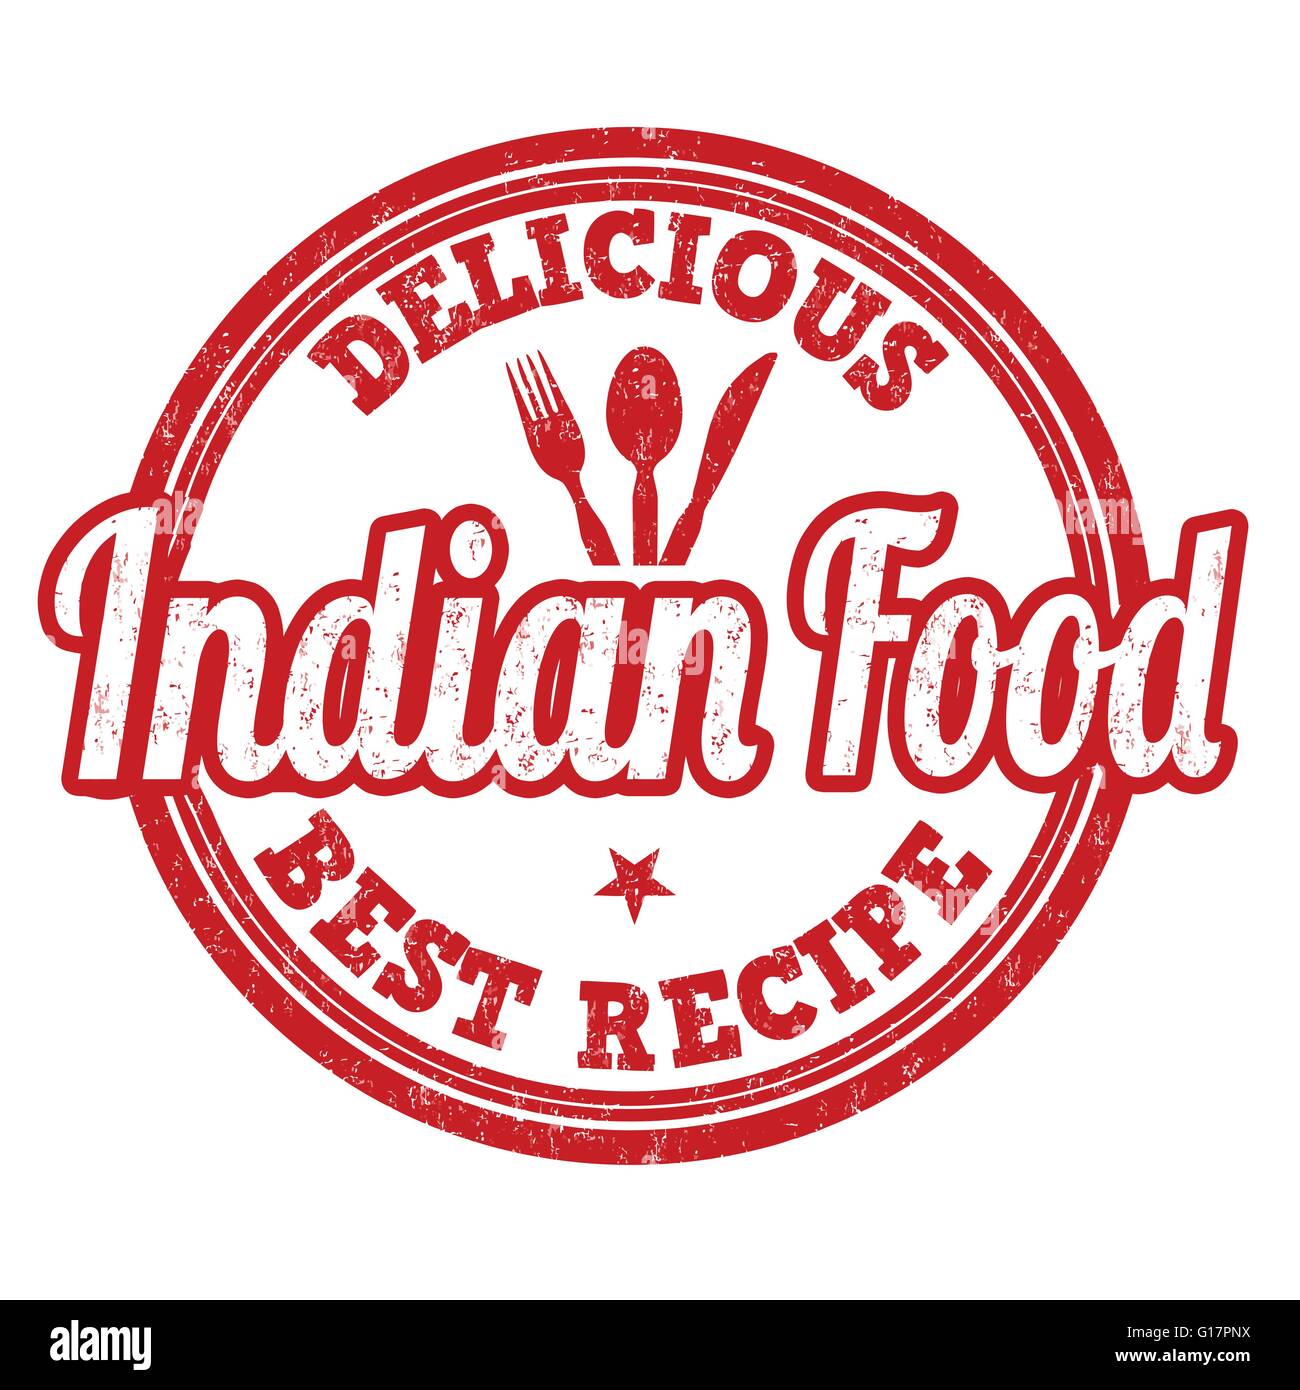 Indisches Essen Grunge Stempel auf weißem Hintergrund, Vektor-illustration Stock Vektor